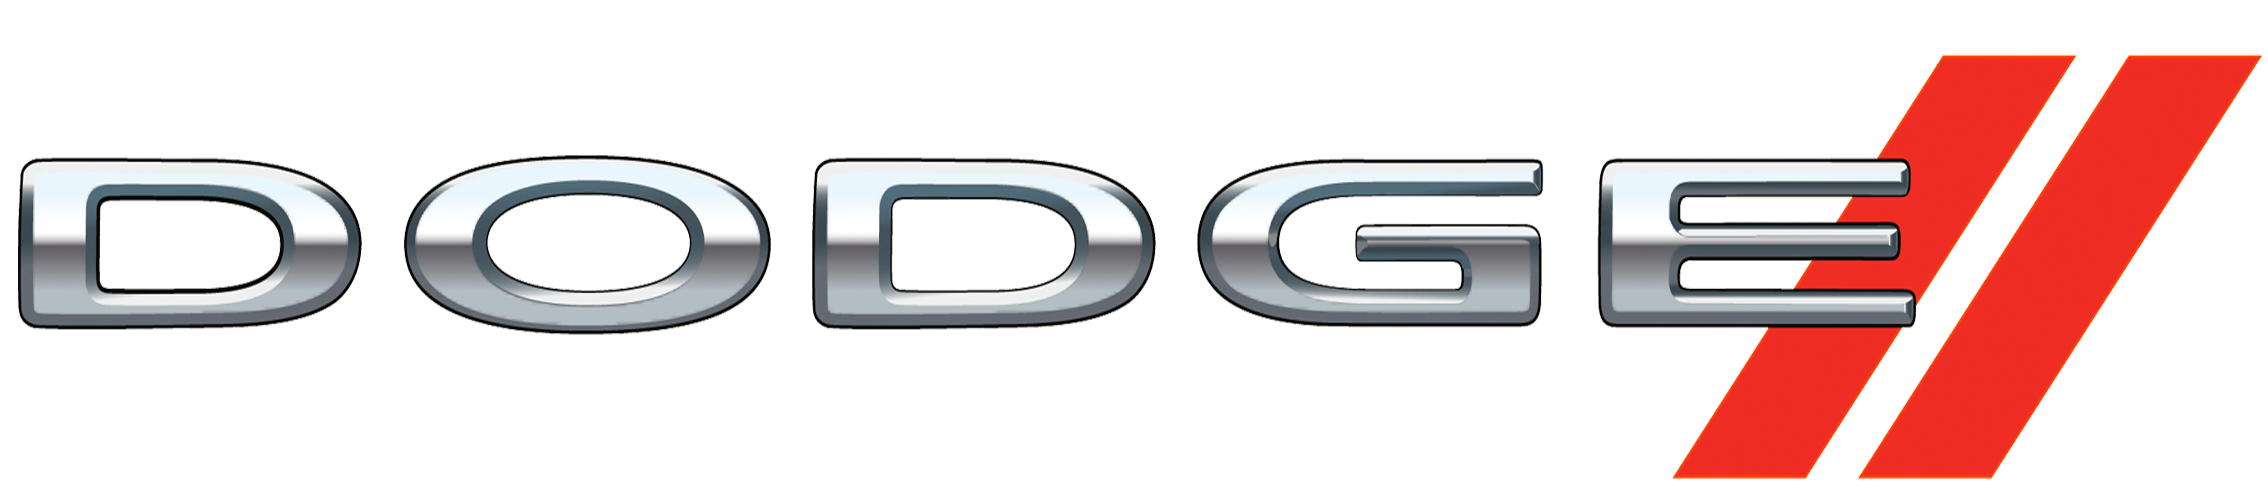 Dodge Car Logos